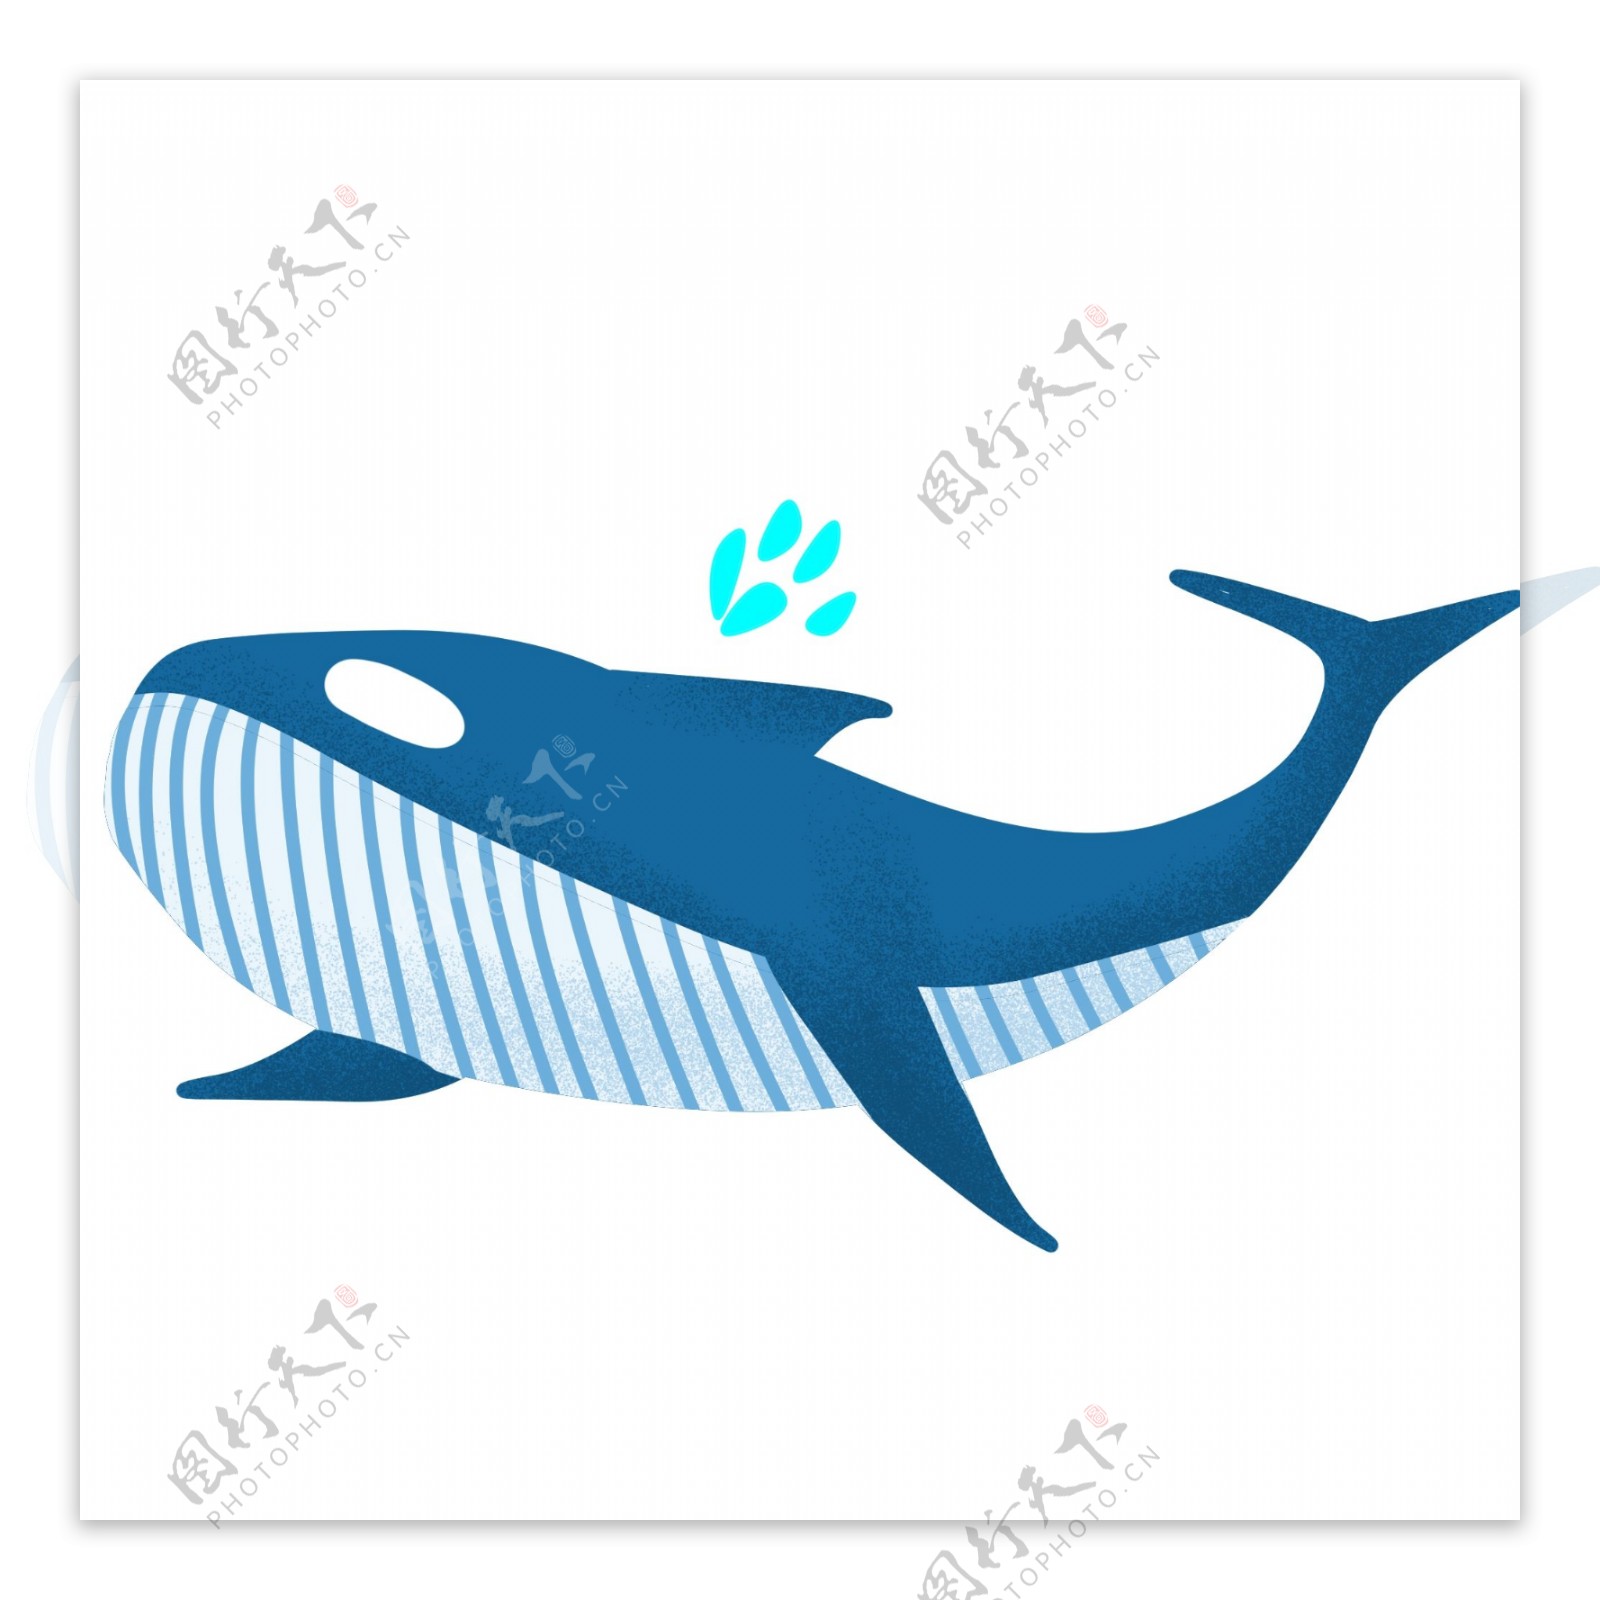 蓝色的鲸鱼手绘插画